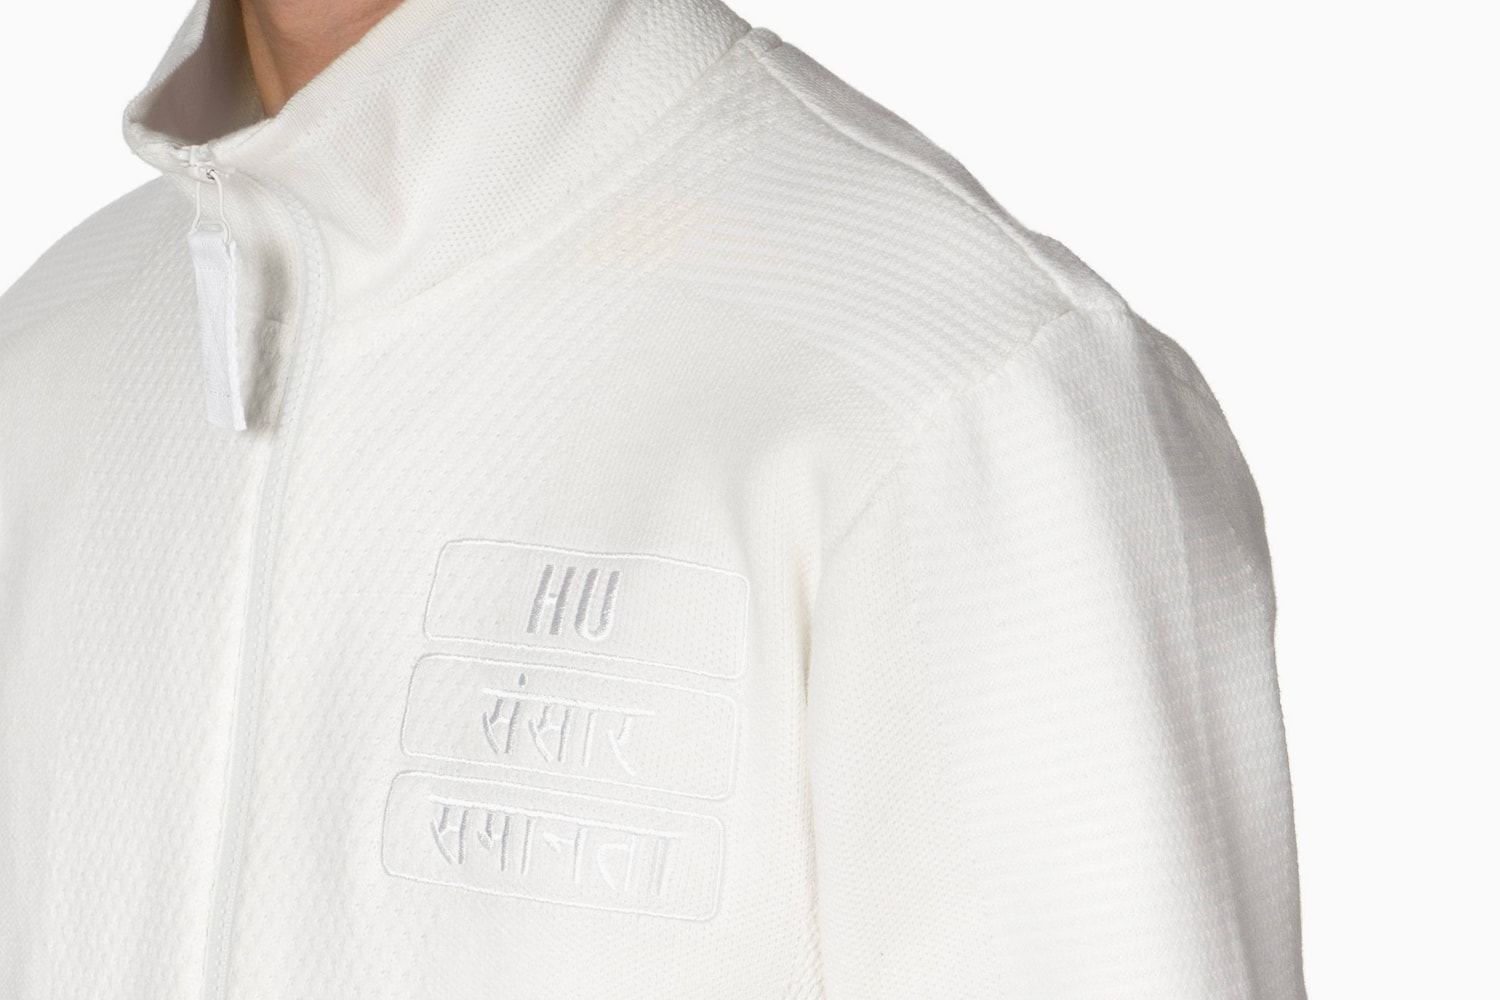 Pharrell Williams adidas Holi Track Jacket White Release